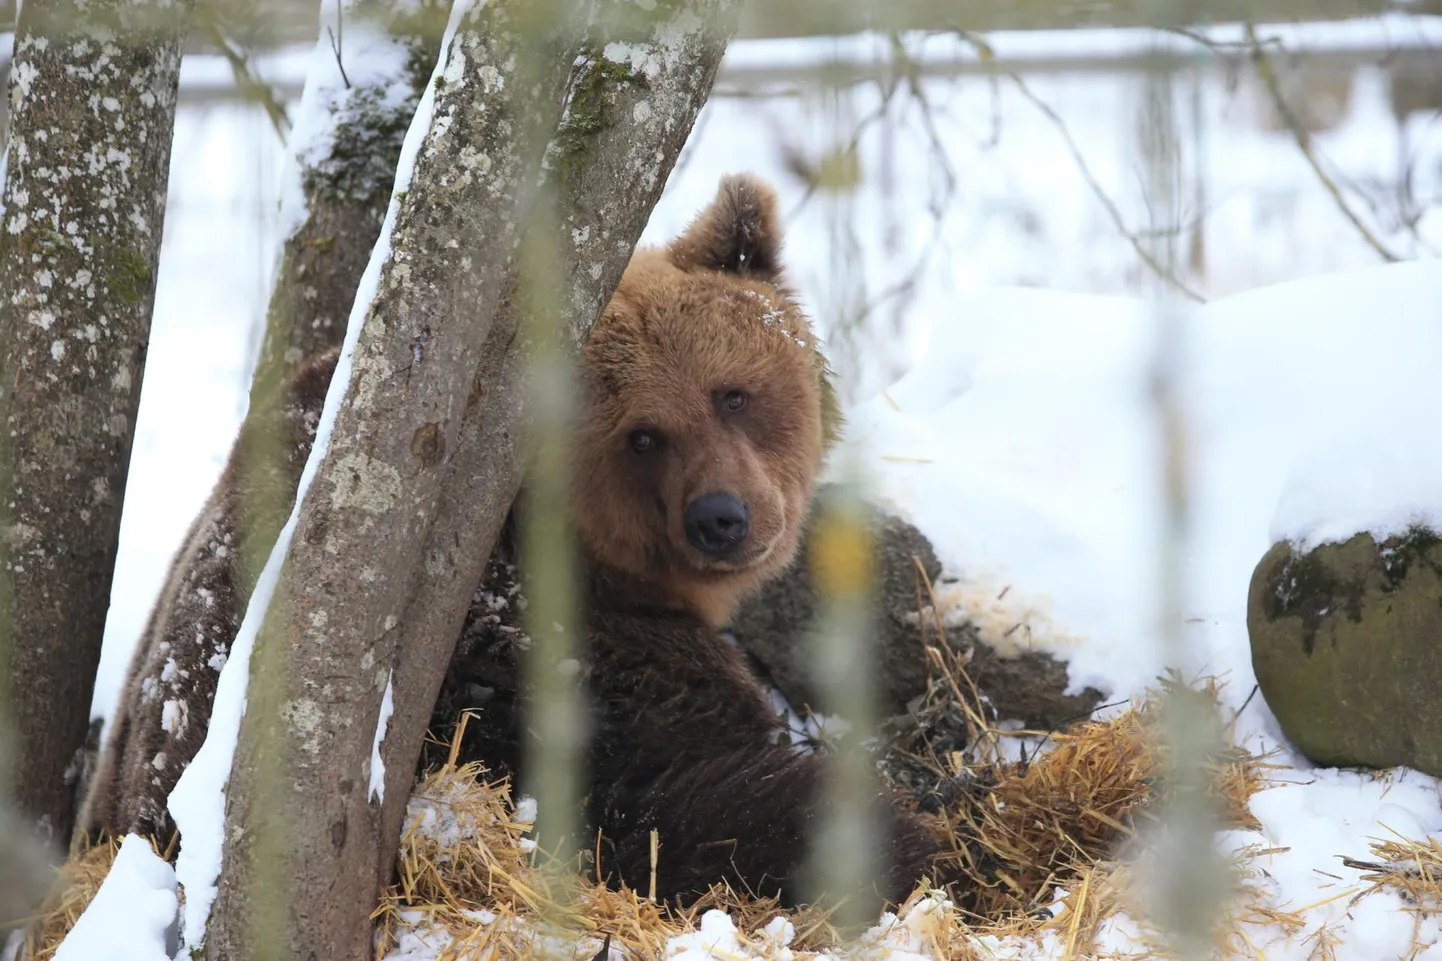 Kuigi looduses teeb karu praegu uinakut, on Elistvere loomapargis võimalik pruunkaru näha ka talvel. Loodusmuuseumi loomapäeval saab aga ronida karukoopassse.